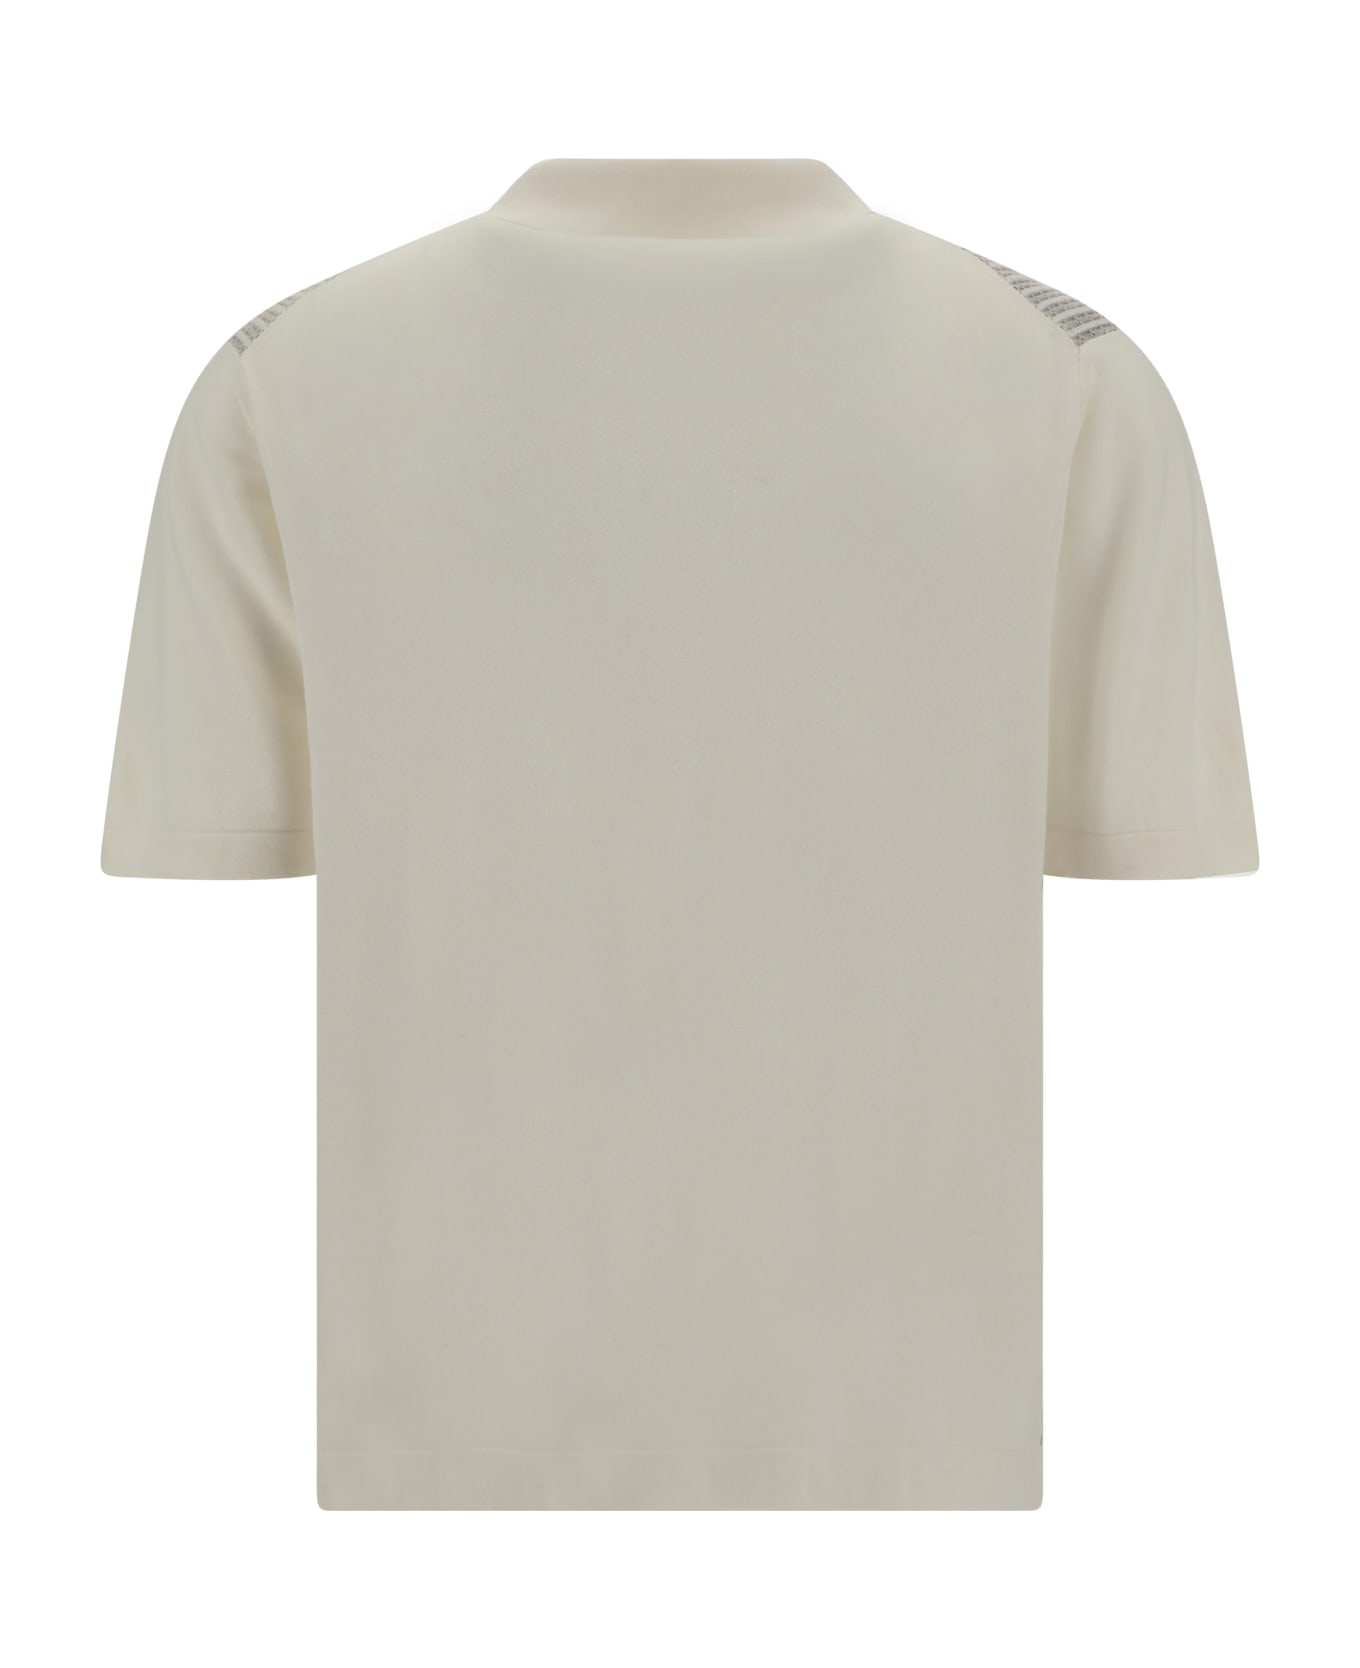 Cruciani Shirt - 41r10004